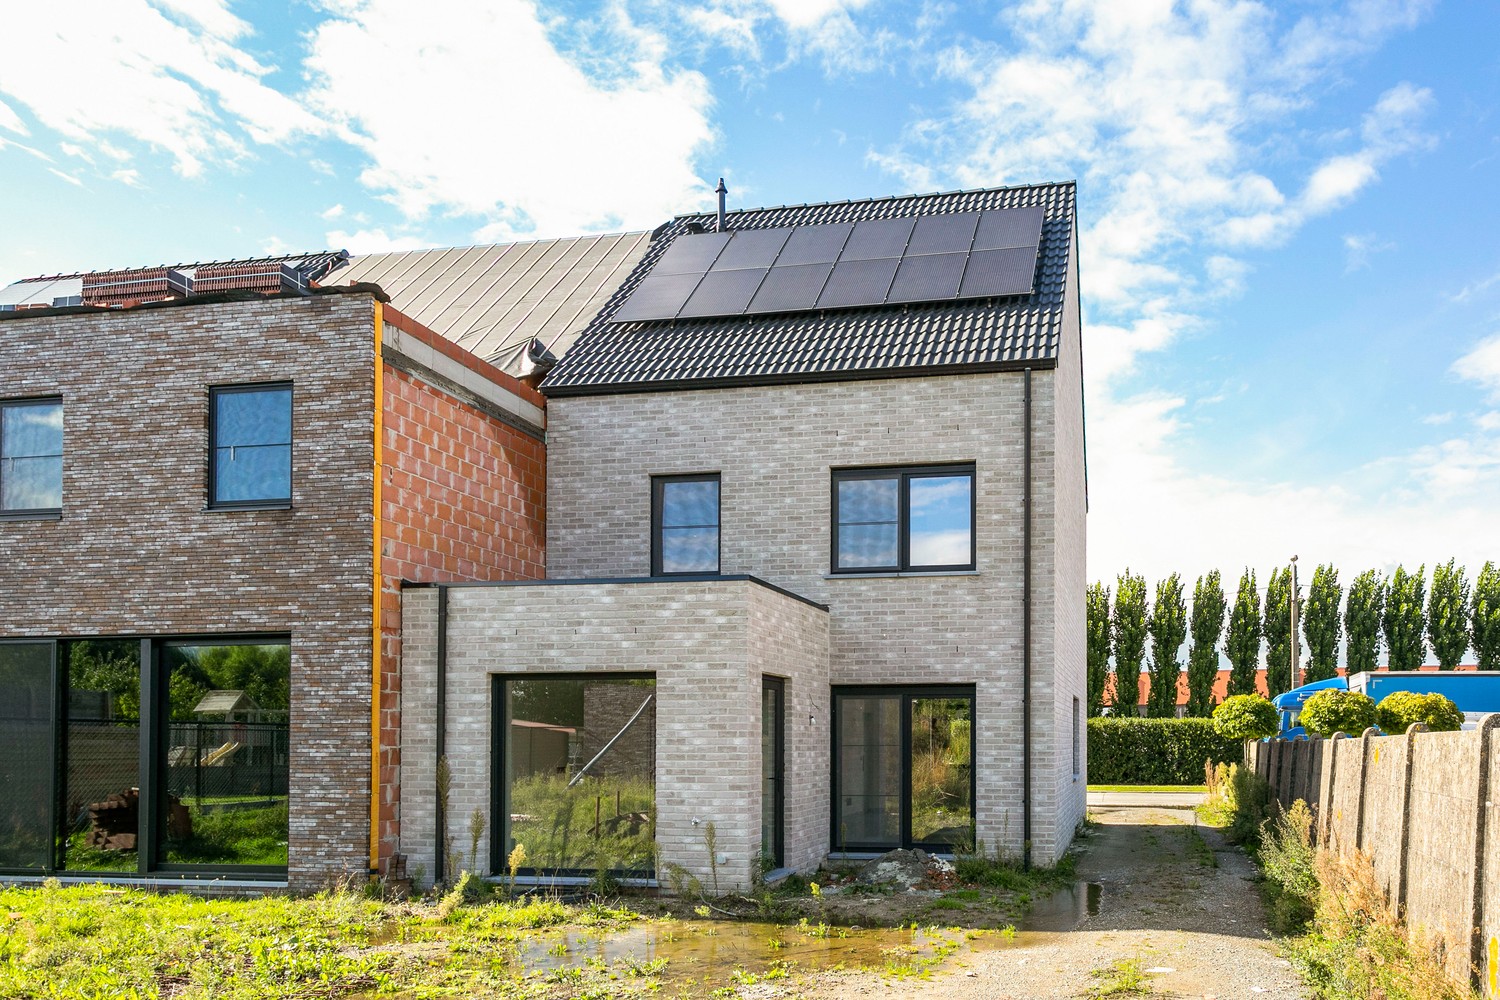 Gloednieuwe, energiezuinige woning met 3 slaapkamers & zonnige tuin in Koningshooikt! afbeelding 20